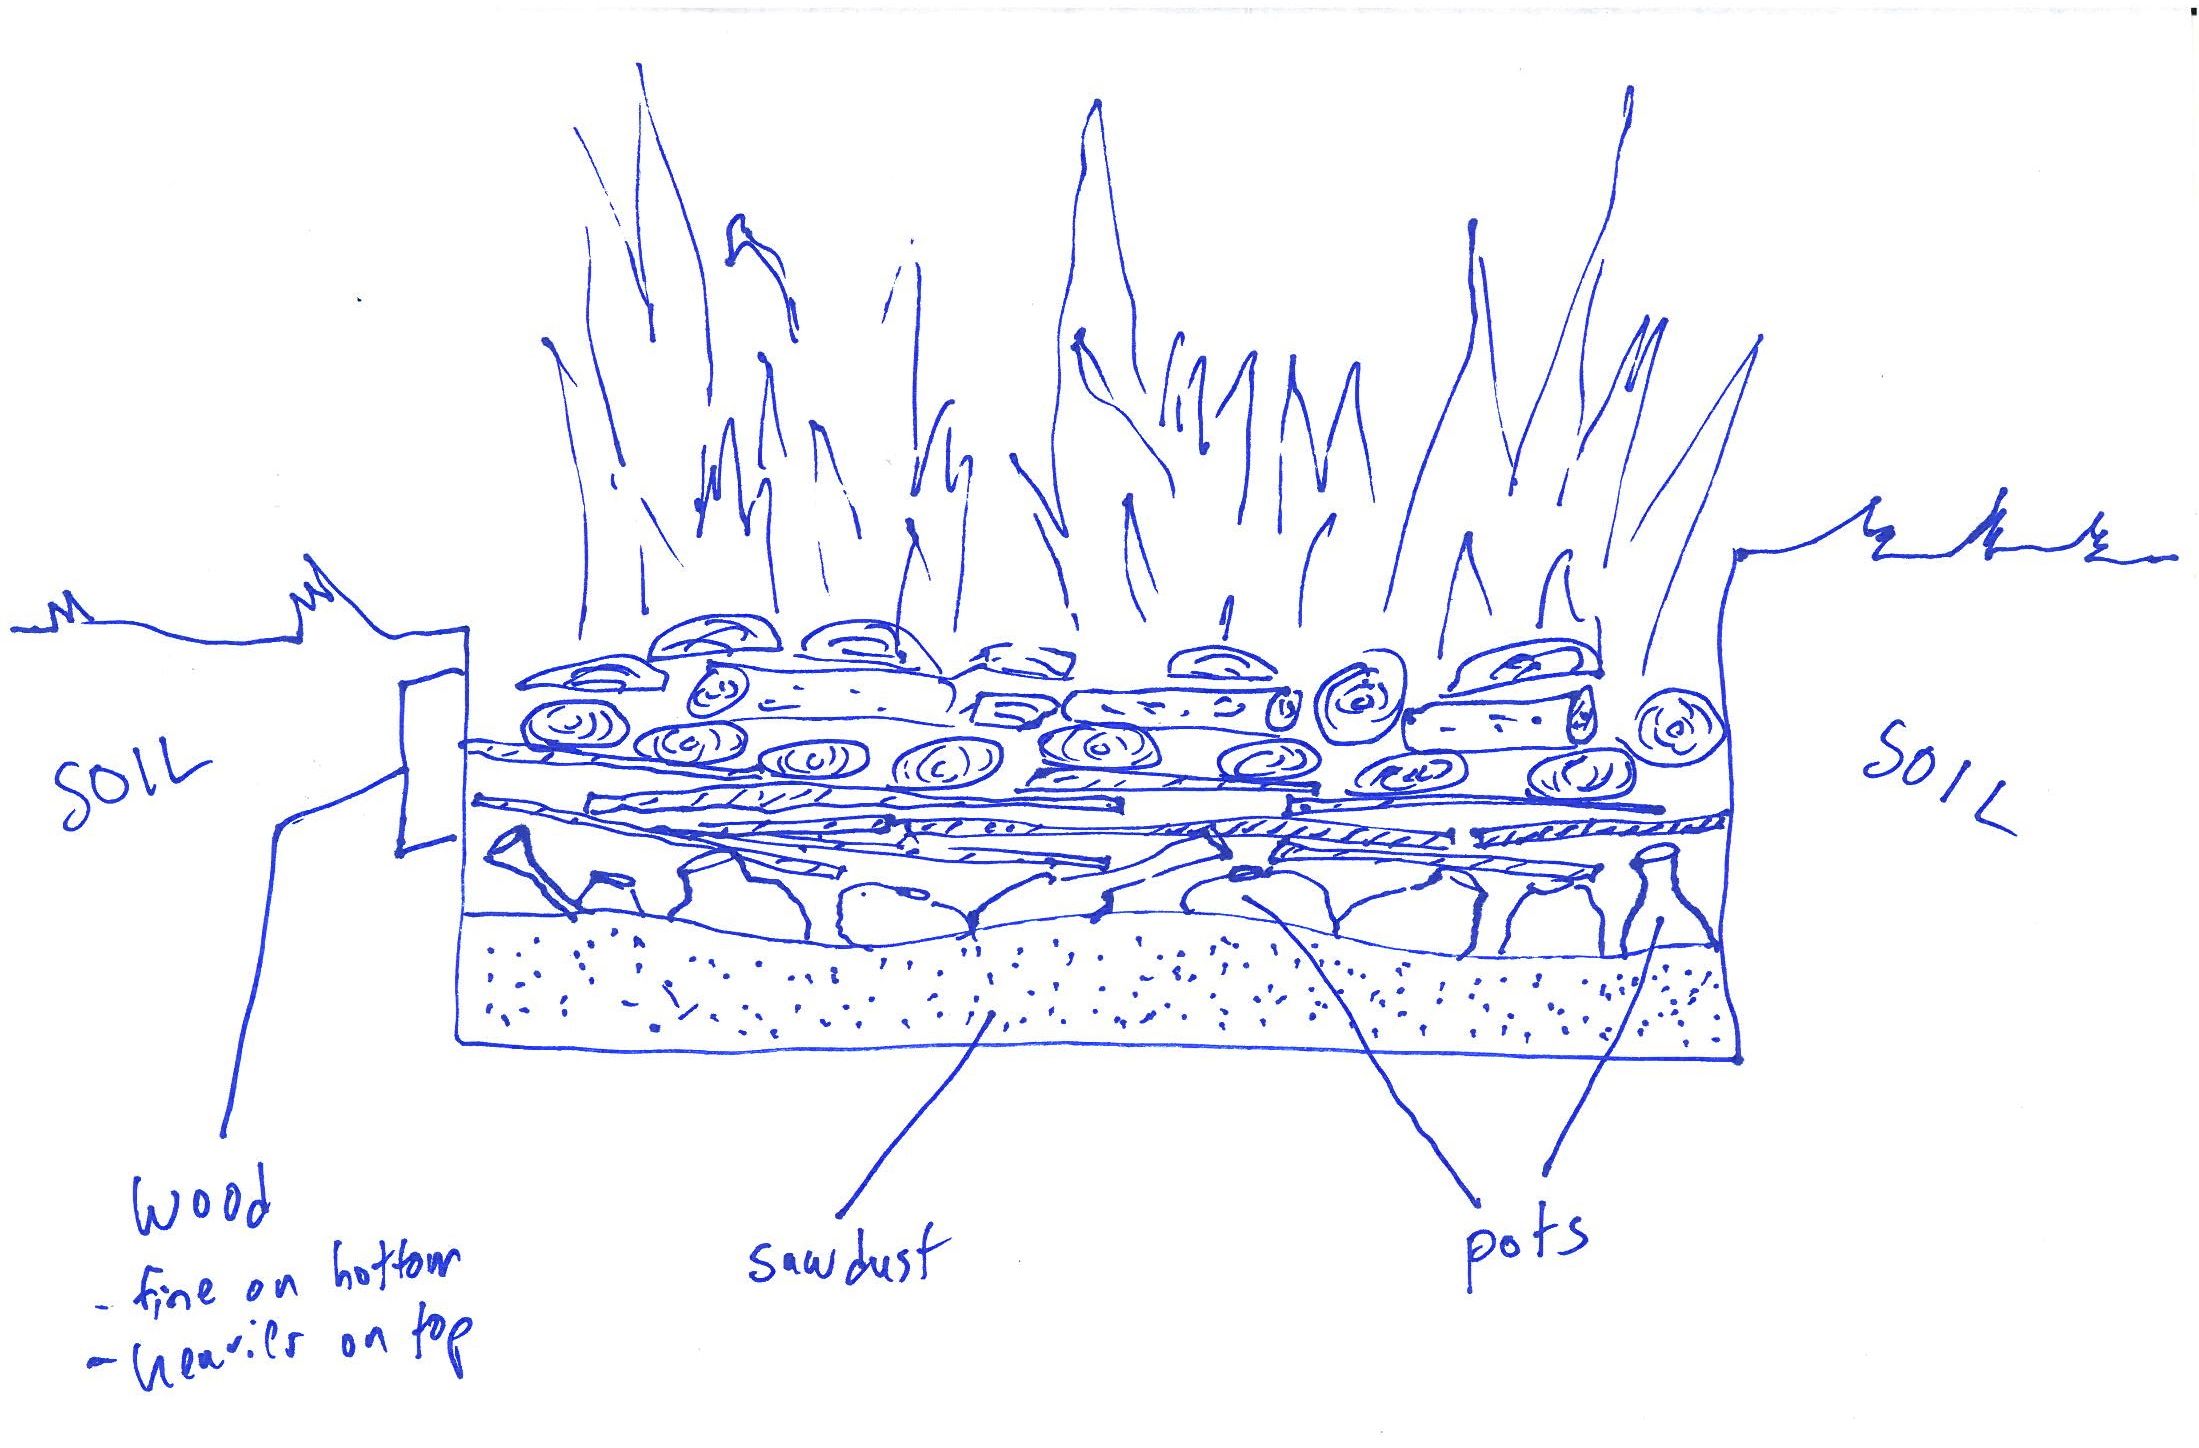 Pit-fire diagram